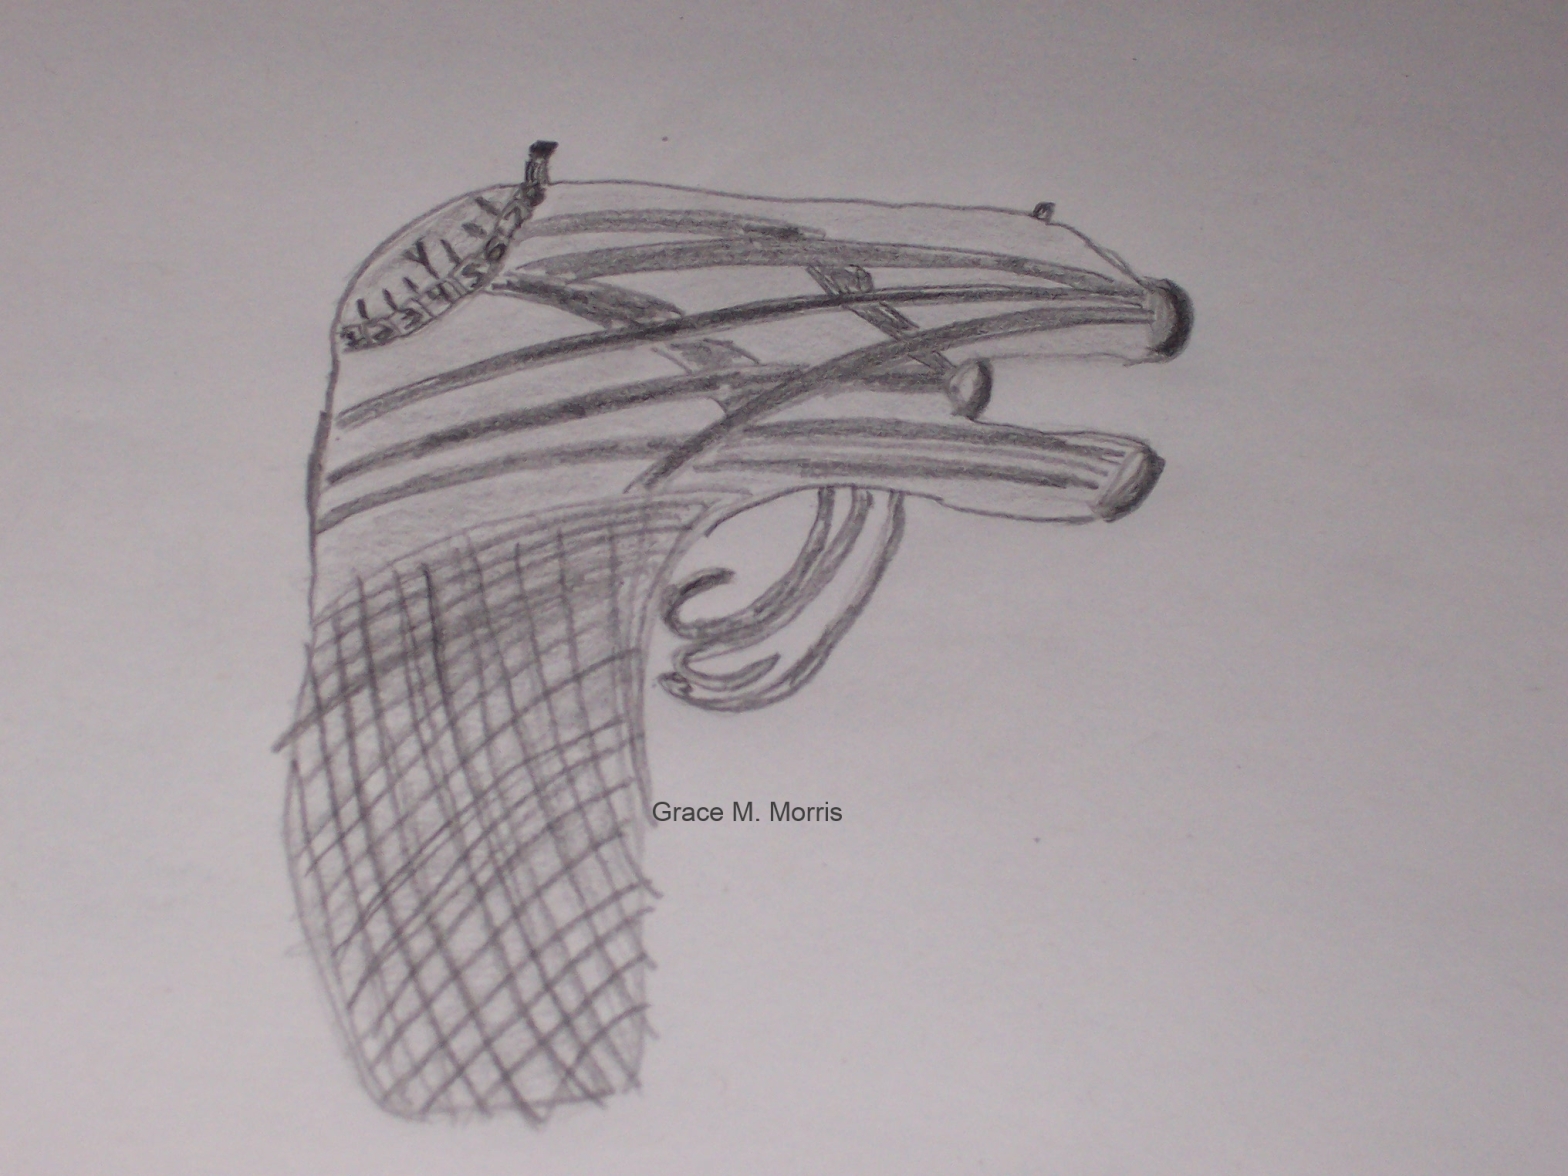 Drawing of a pash gun by Grace M. Morris